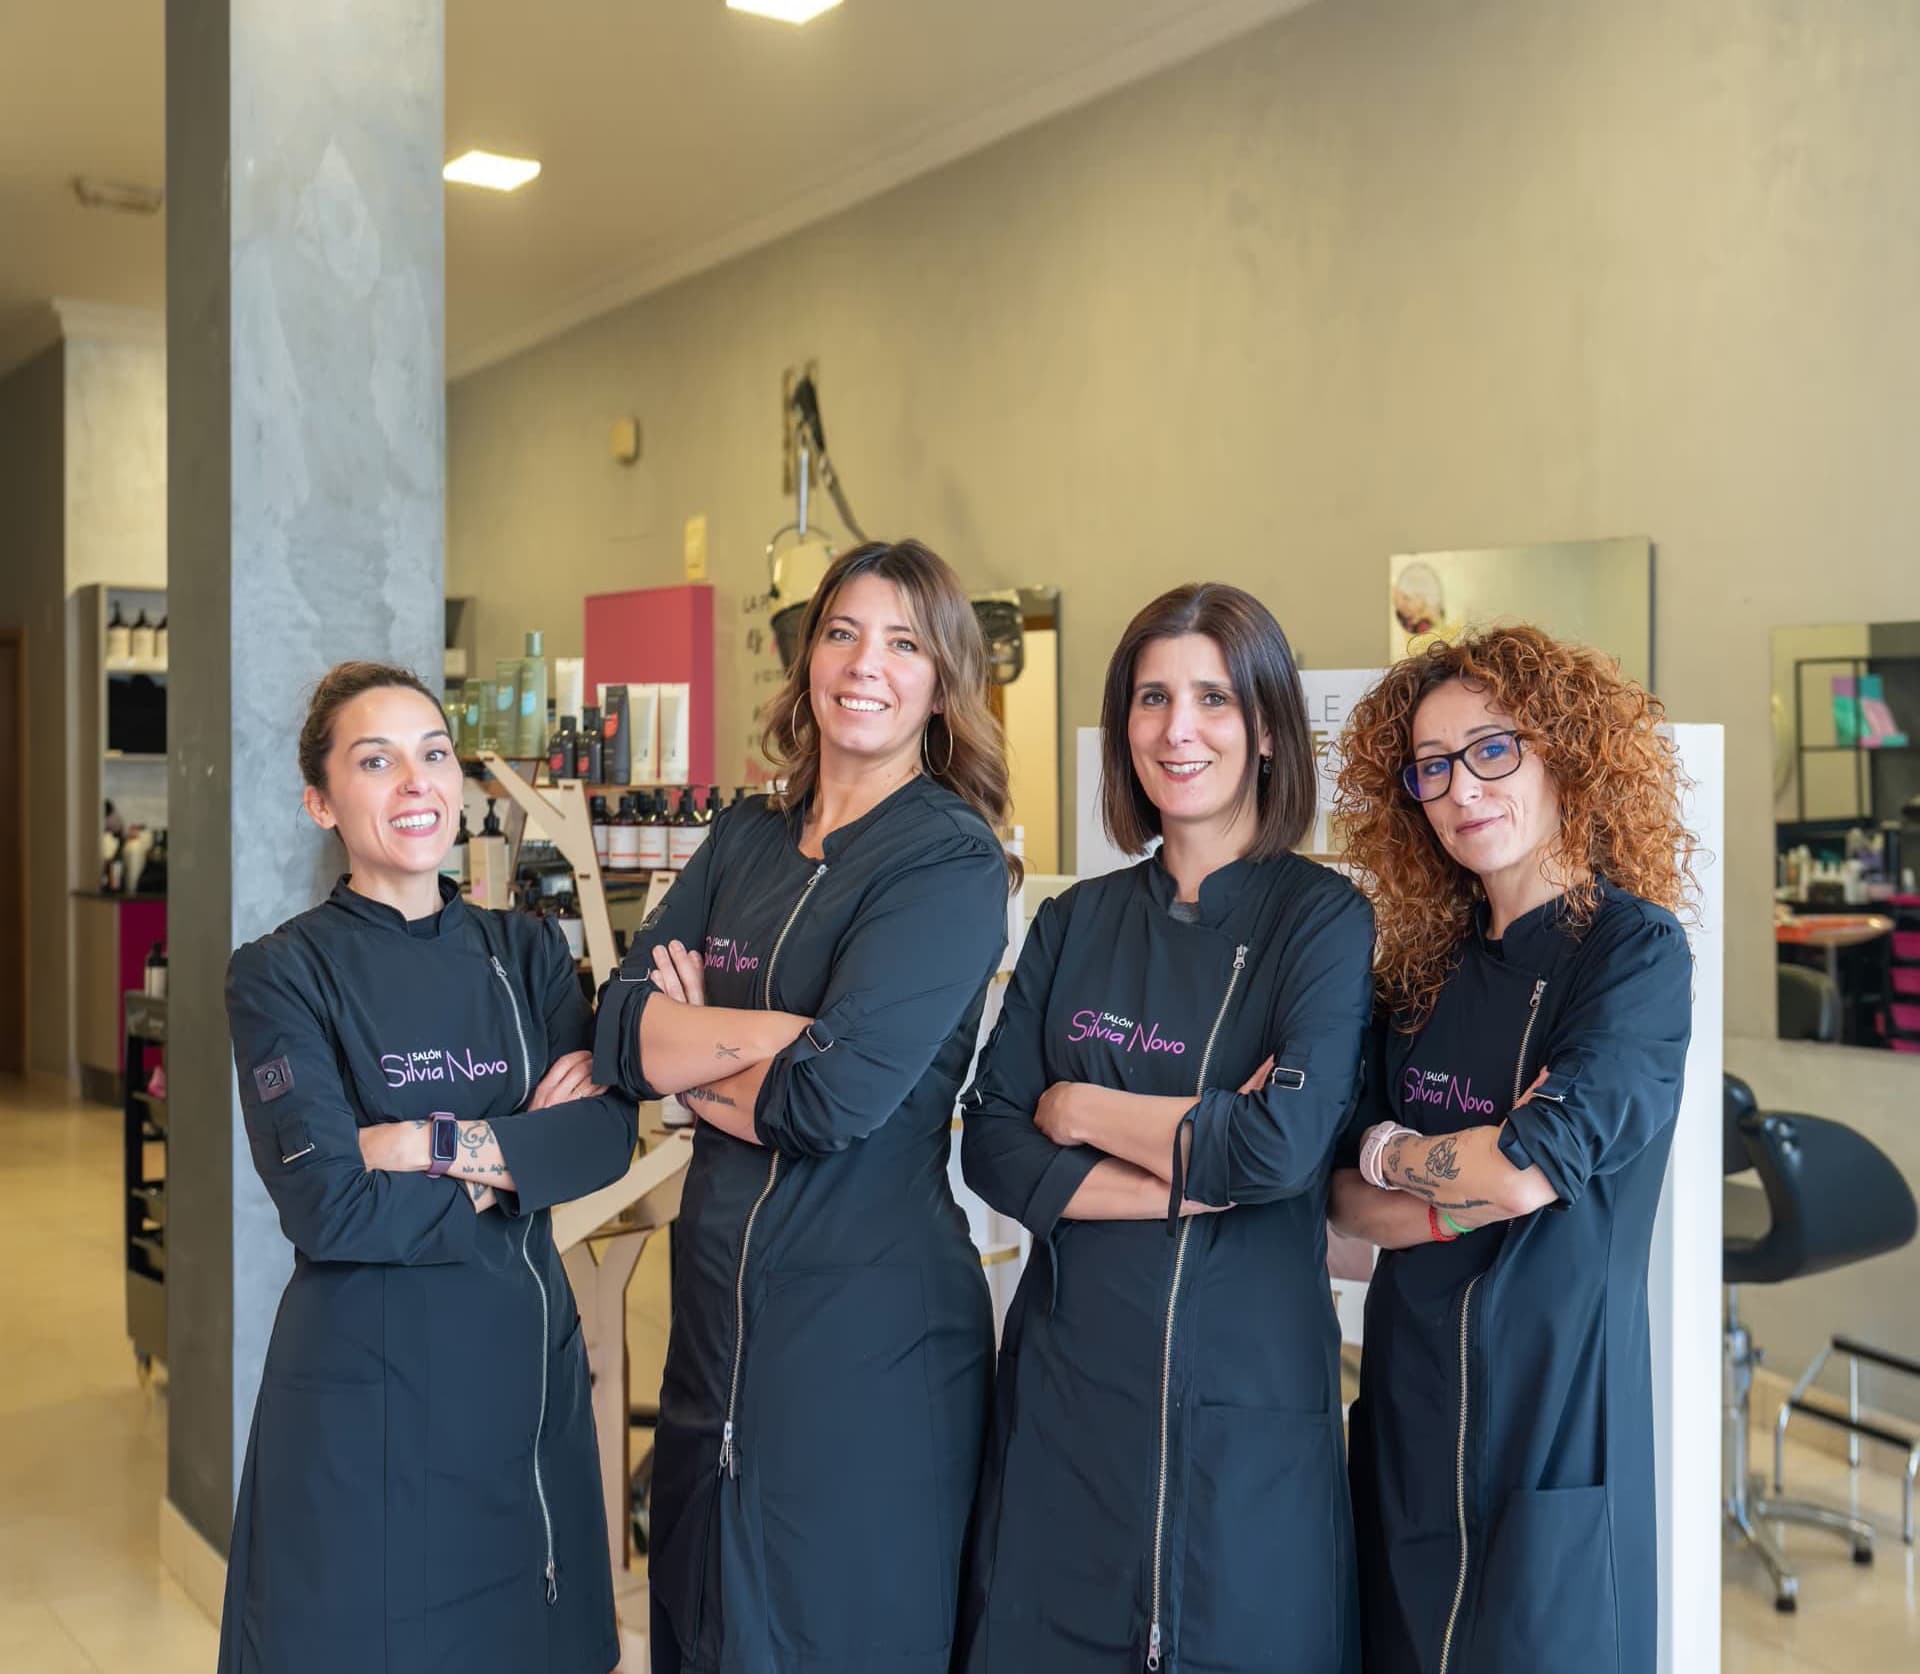 Contactar con Silvia Novo, peluquería unisex en Fene